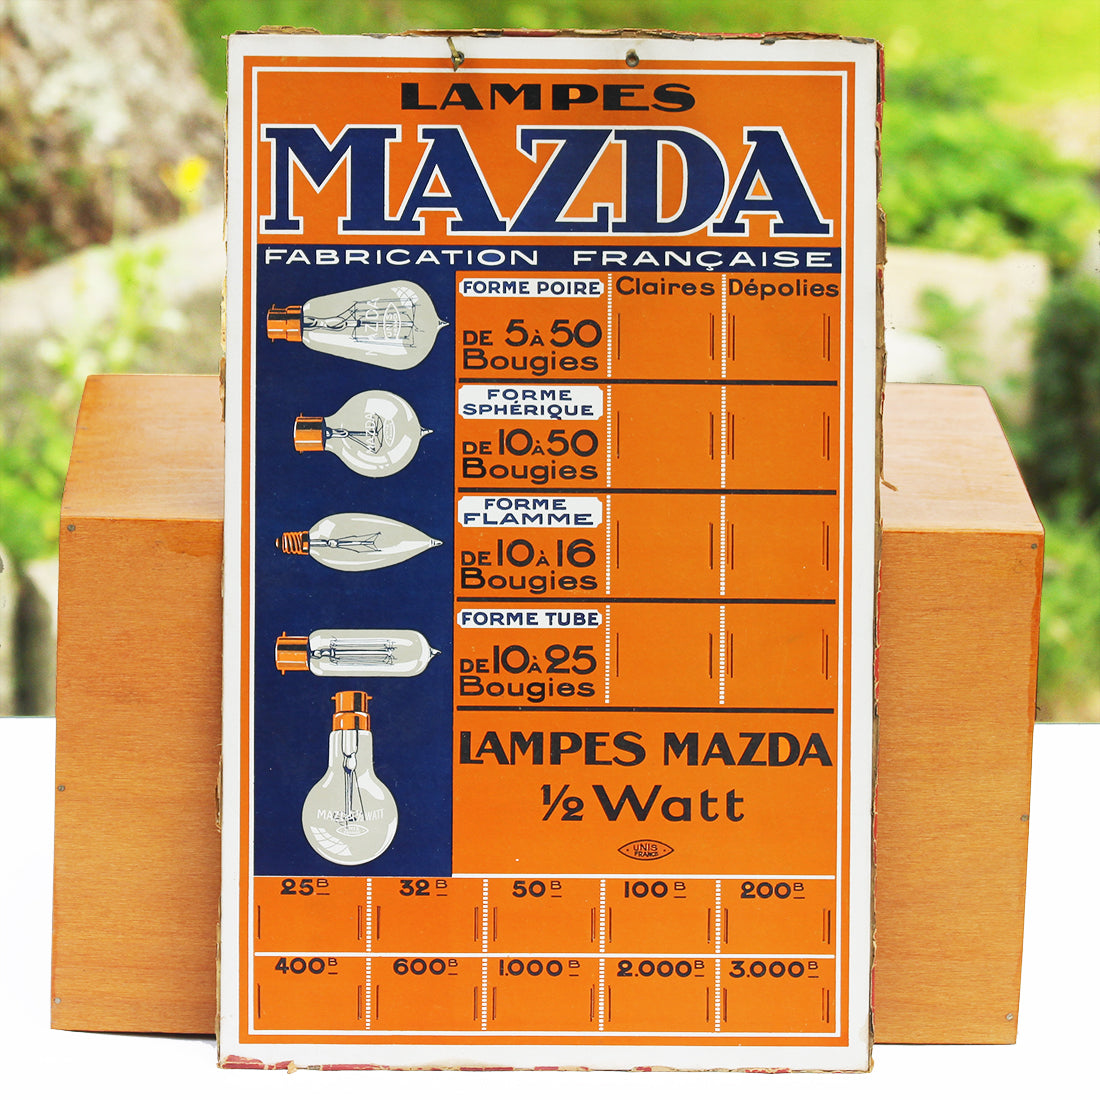 Carton publicitaire des Lampes Mazda affichage des prix des ampoules